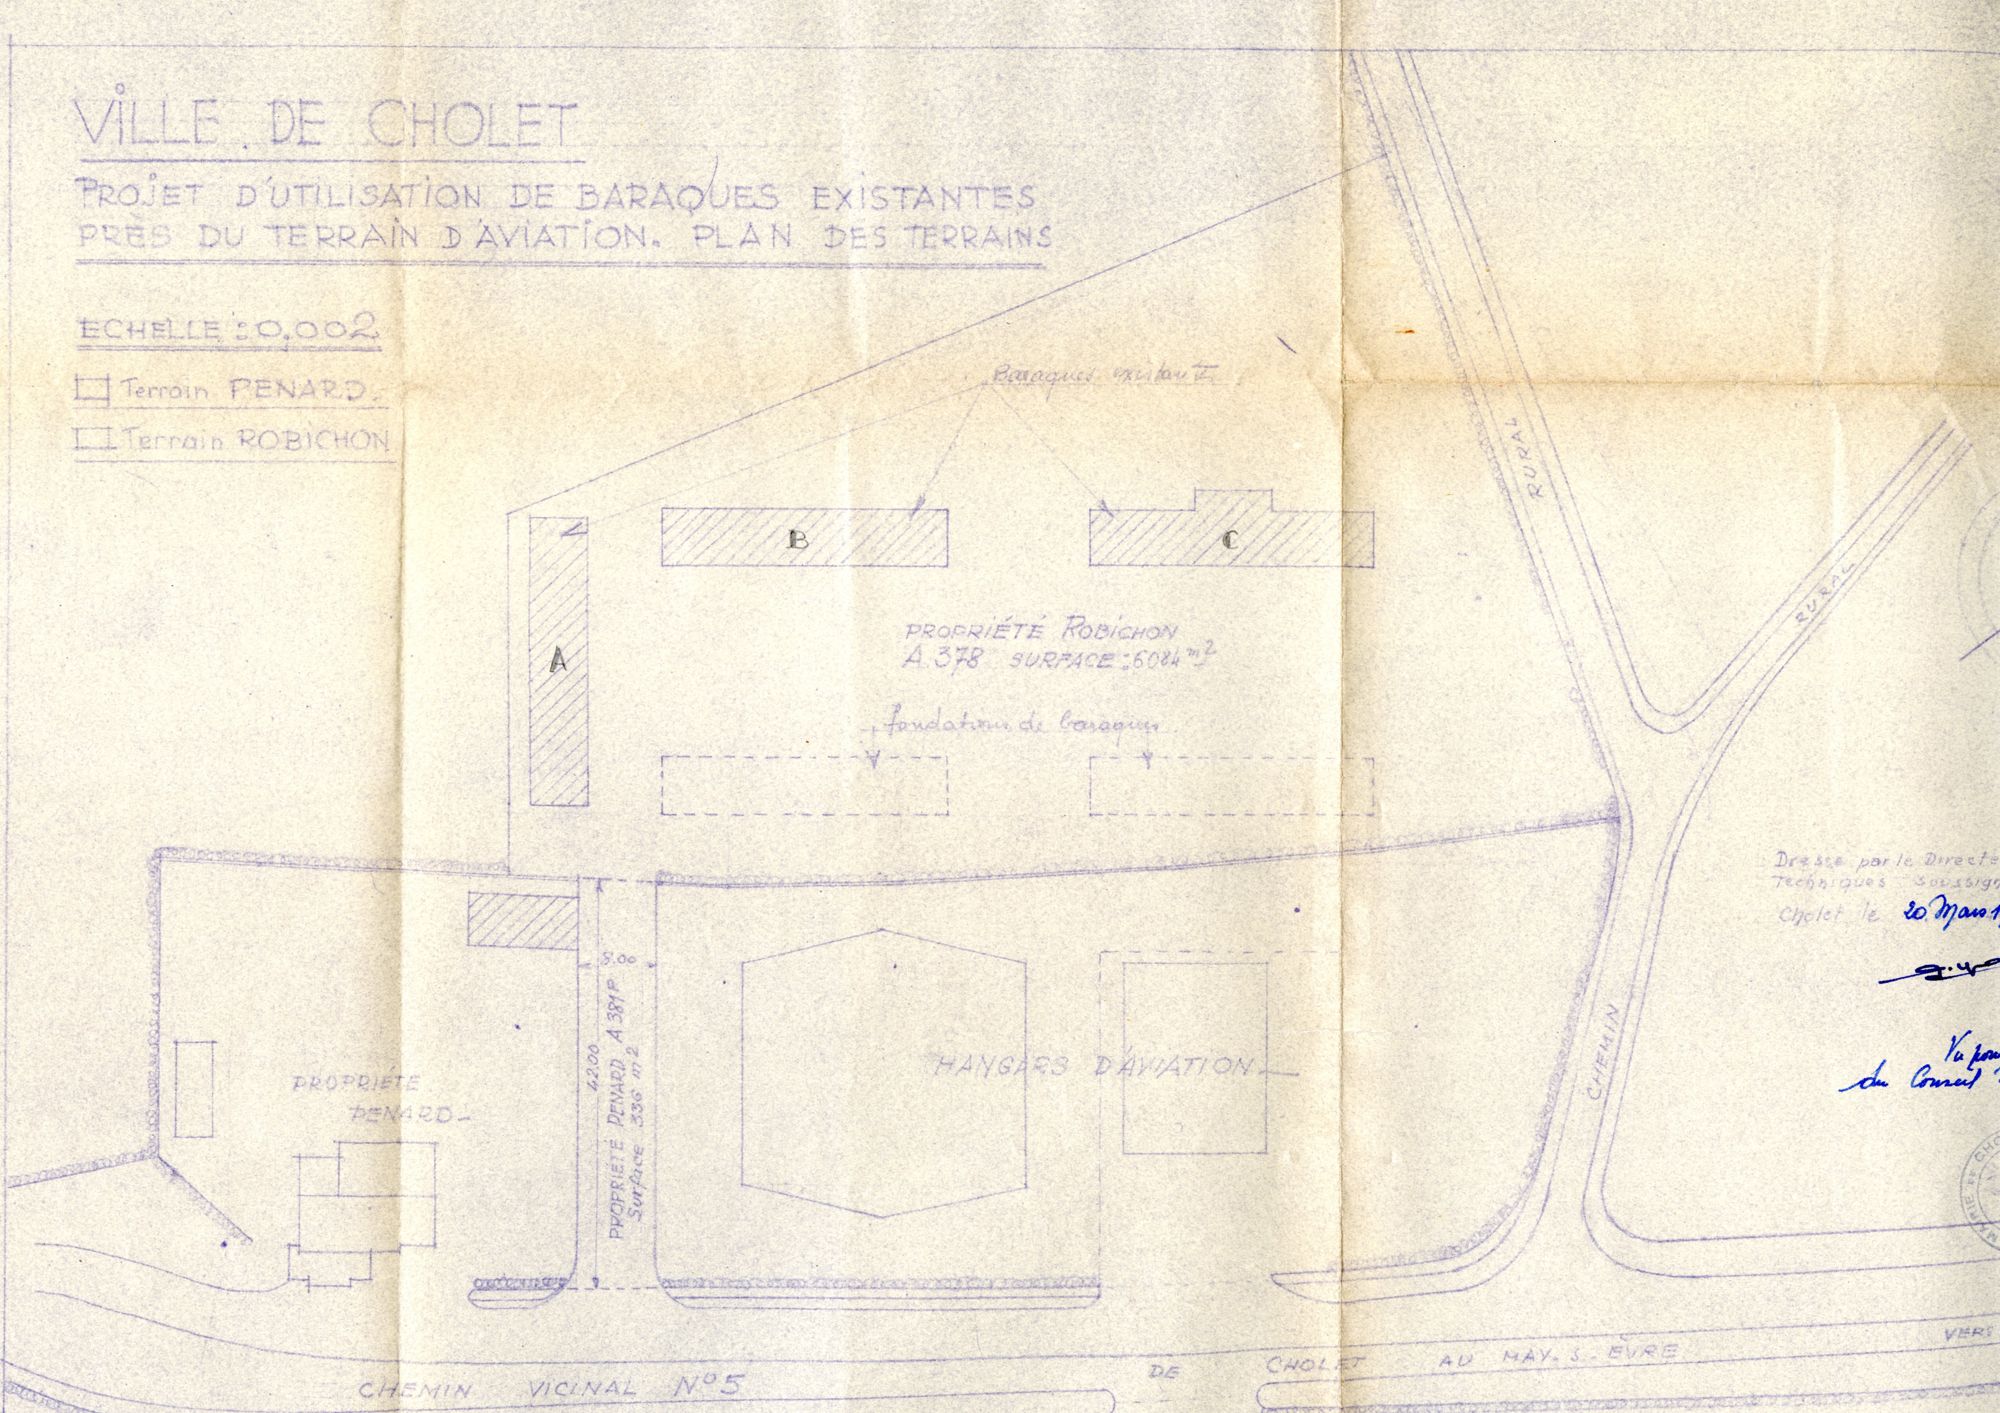 STB118 - Aérodrome, construction de baraquements : plans, rapport, 1944-1947. Coll. AMC